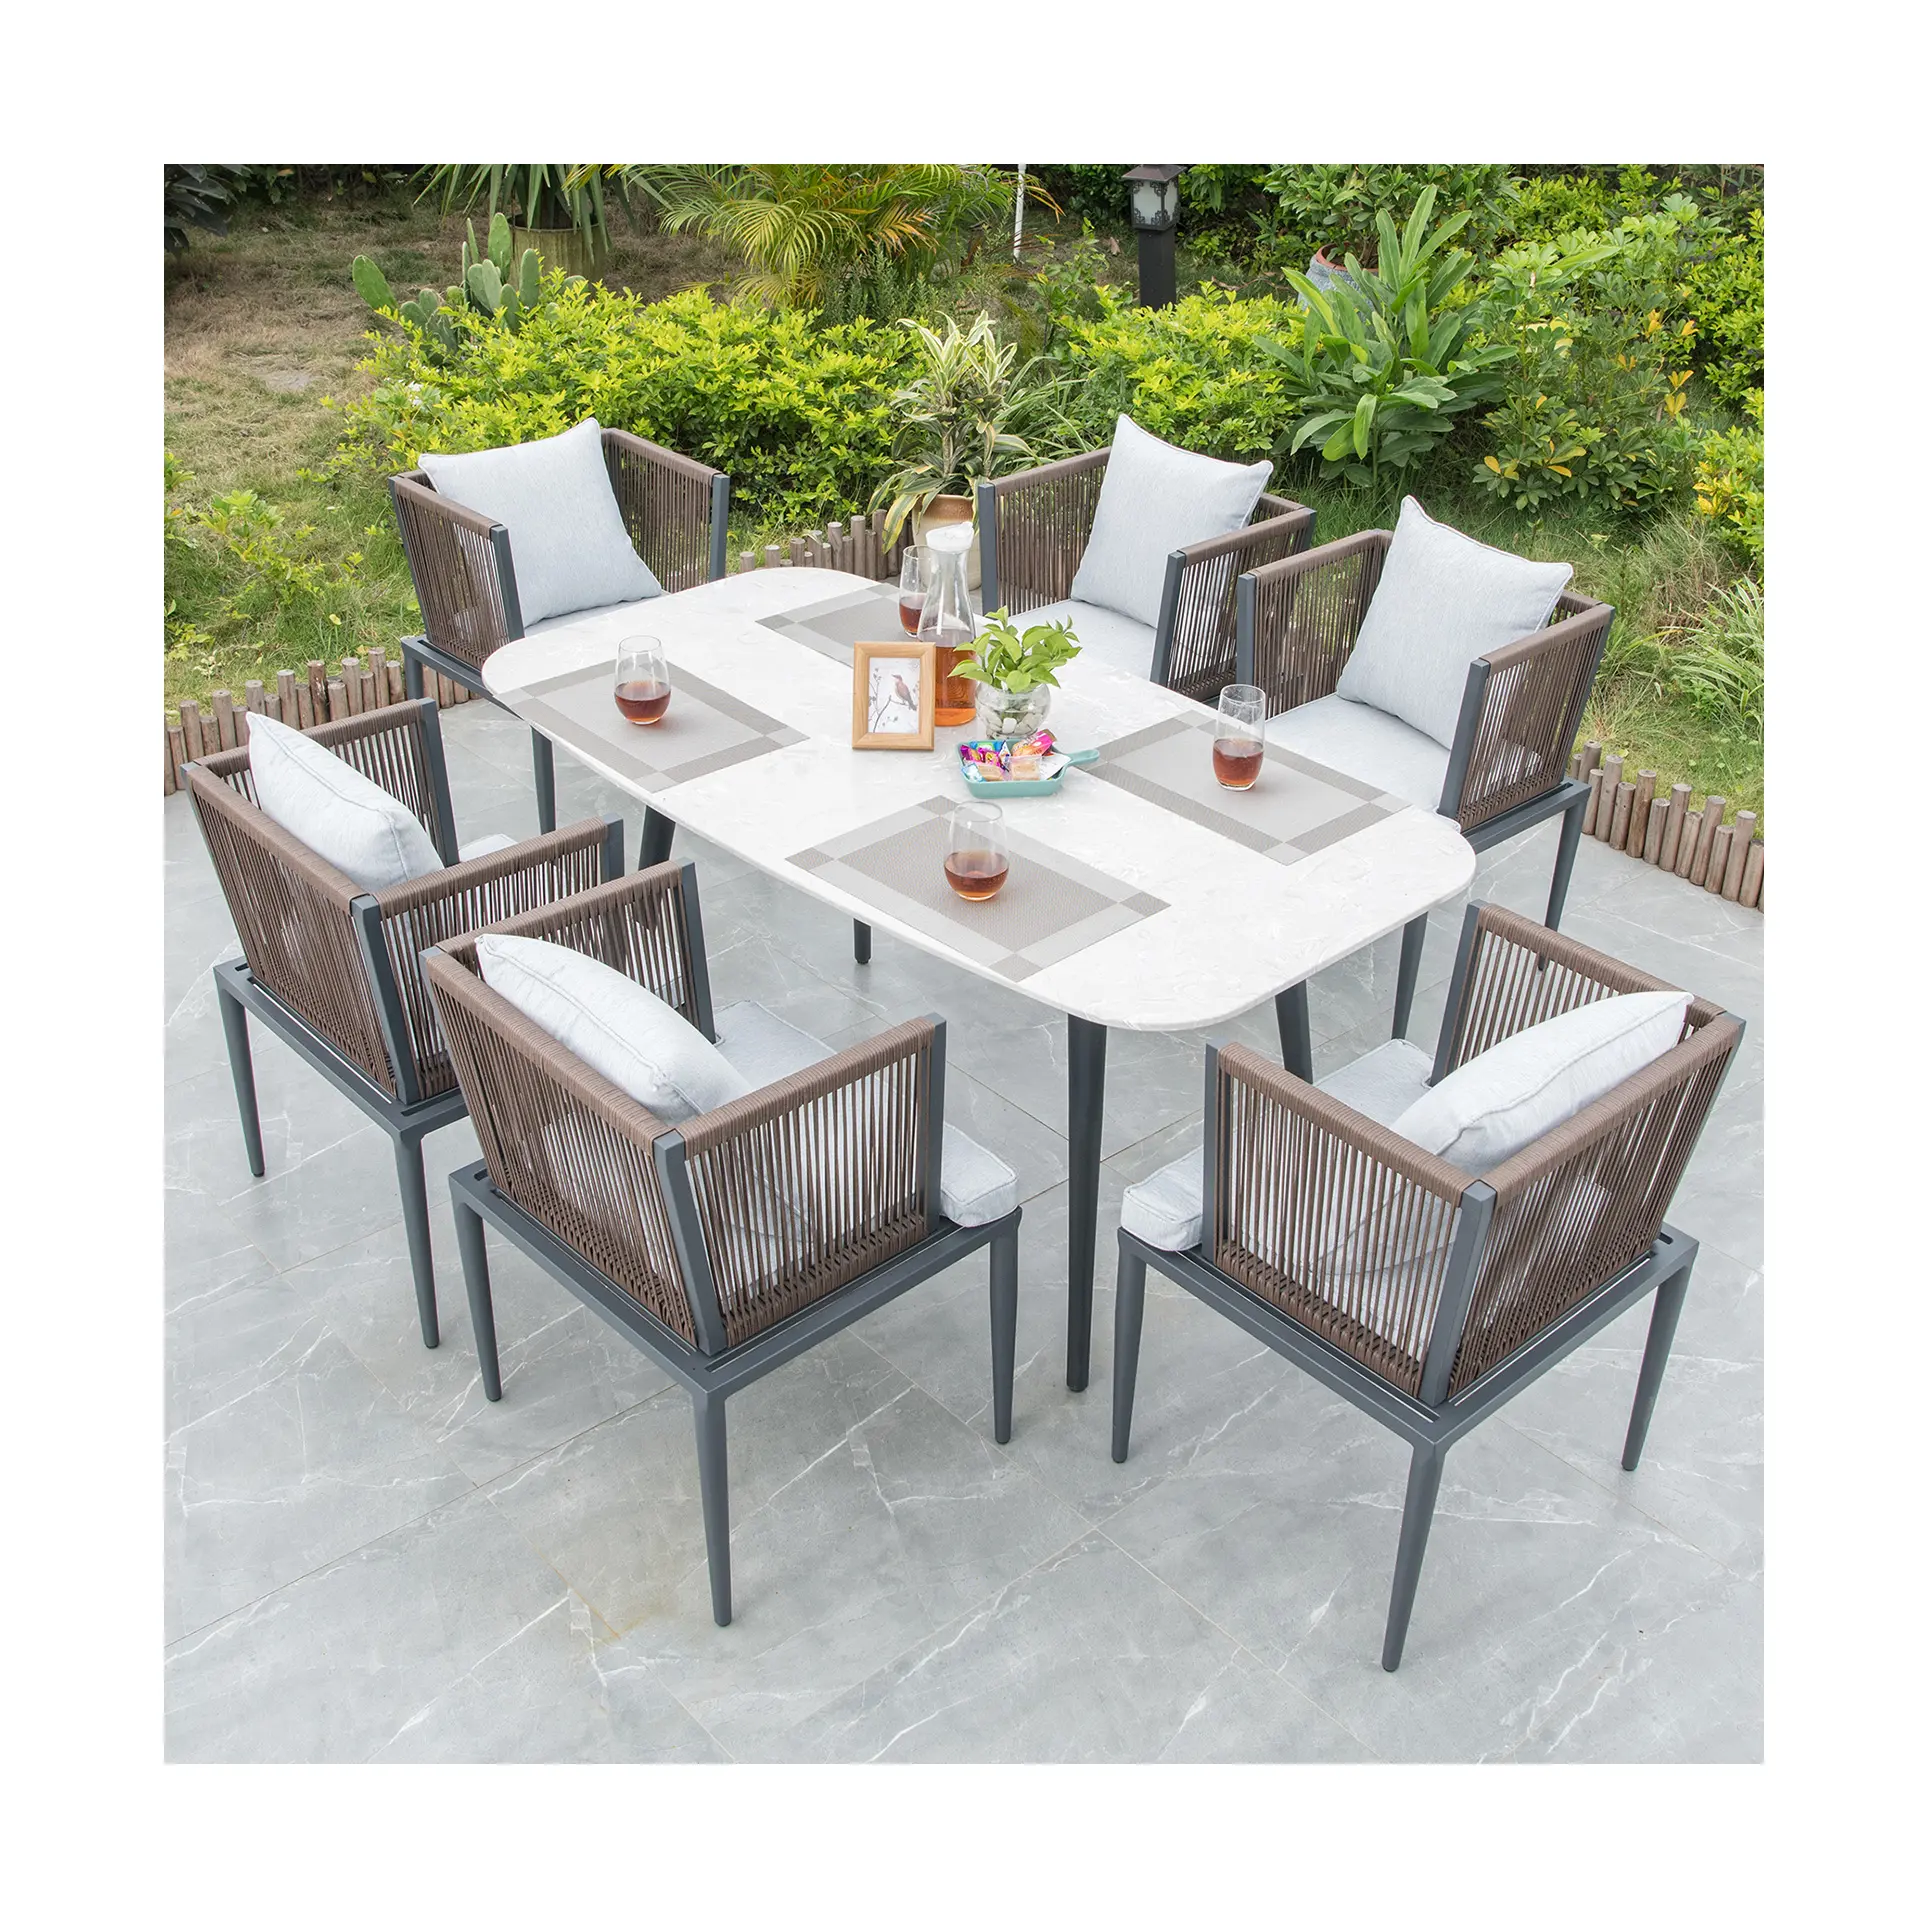 [هوا هونغ] كرسي عشاء بتصميم بسيط وعصري مناسب للحدائق والفناء خارج المنزل كرسي راتان طاولات كراسي عشاء